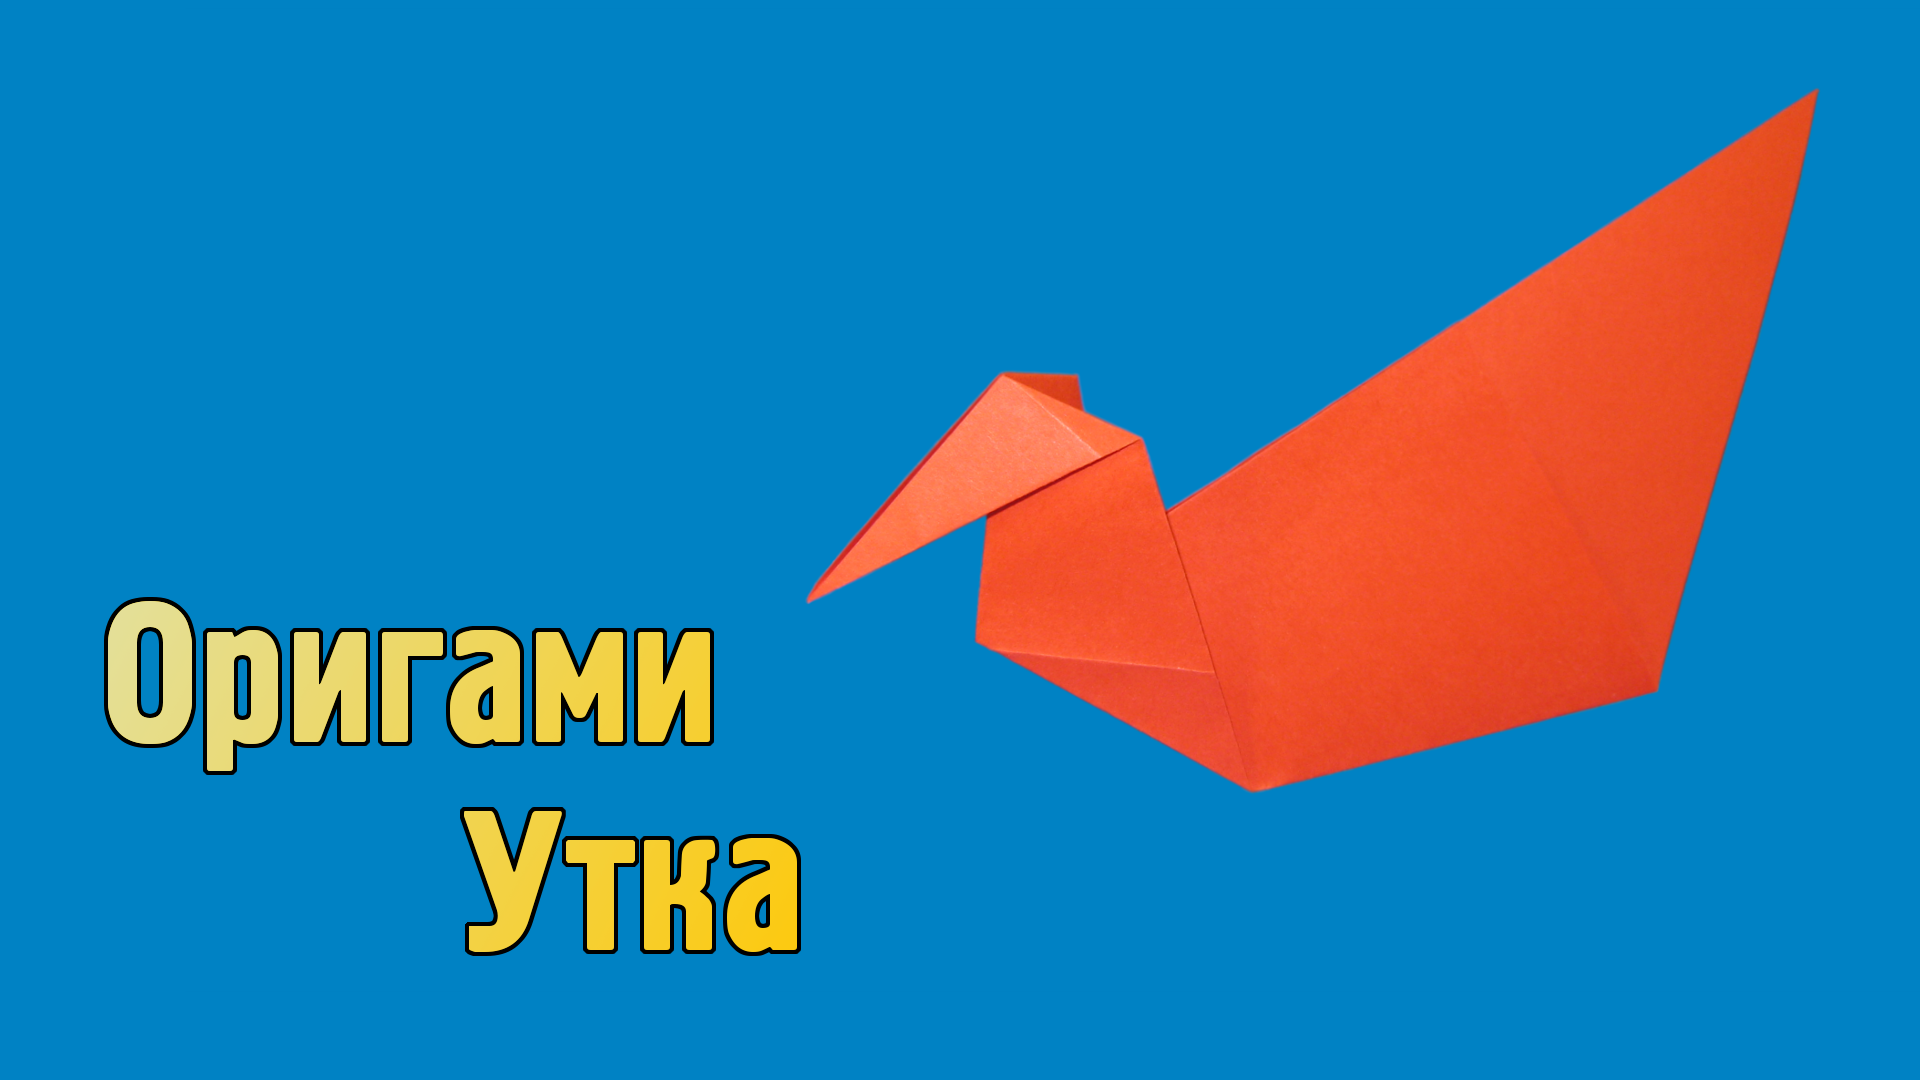 Как сделать Утку из бумаги своими руками | Оригами Утка для детей | Фигурка Птицы без клея